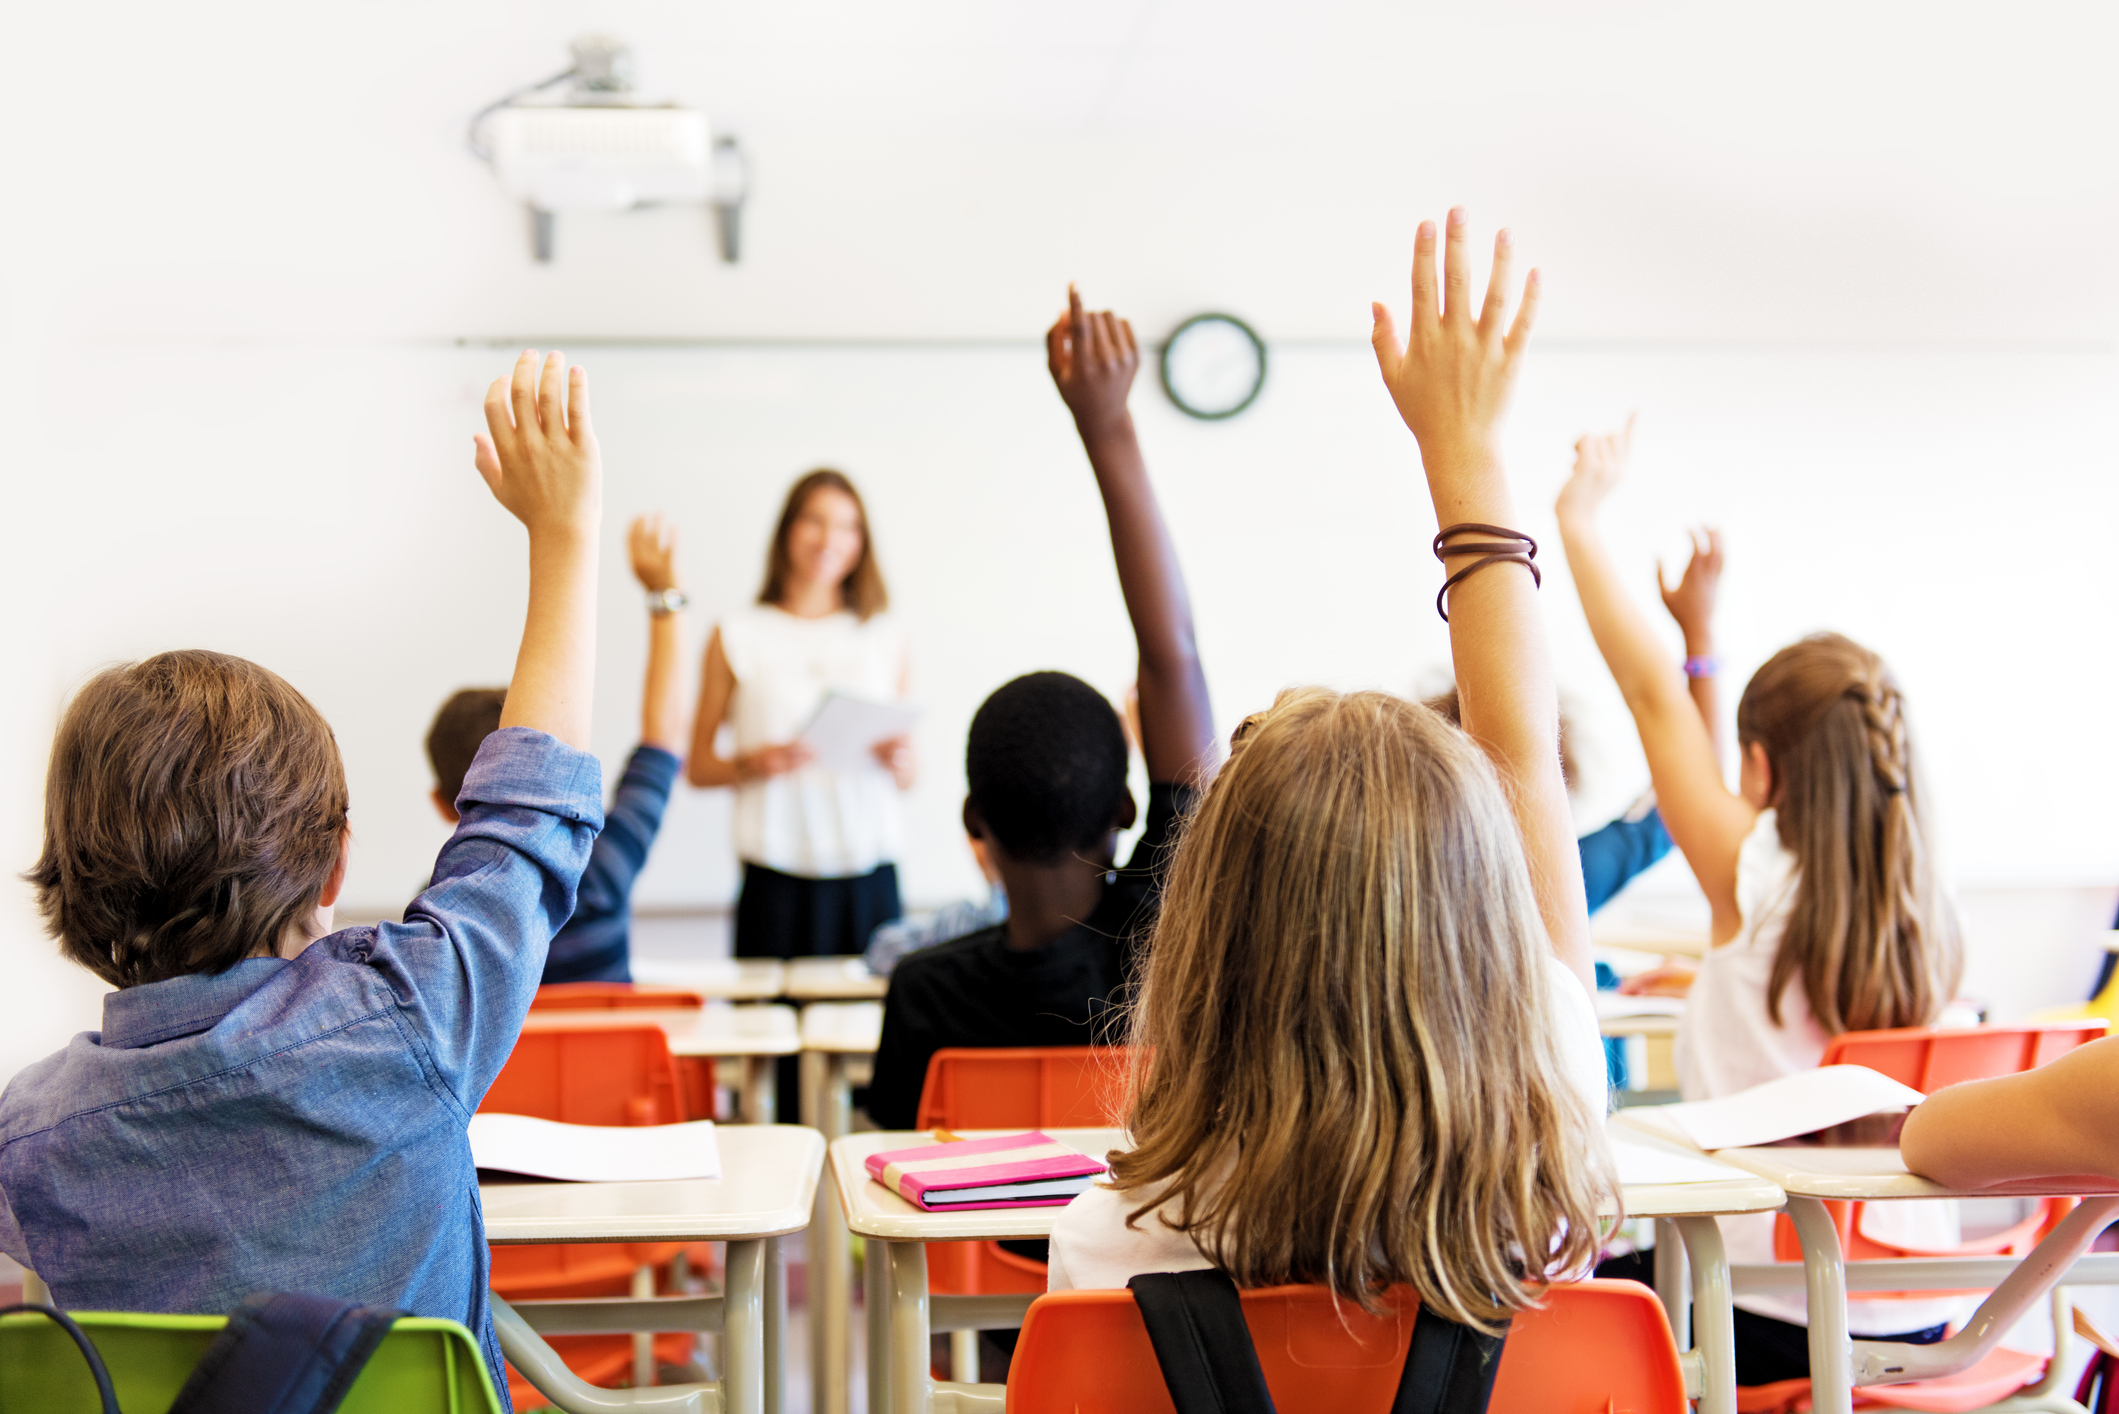 School kids in classroom raising their hands